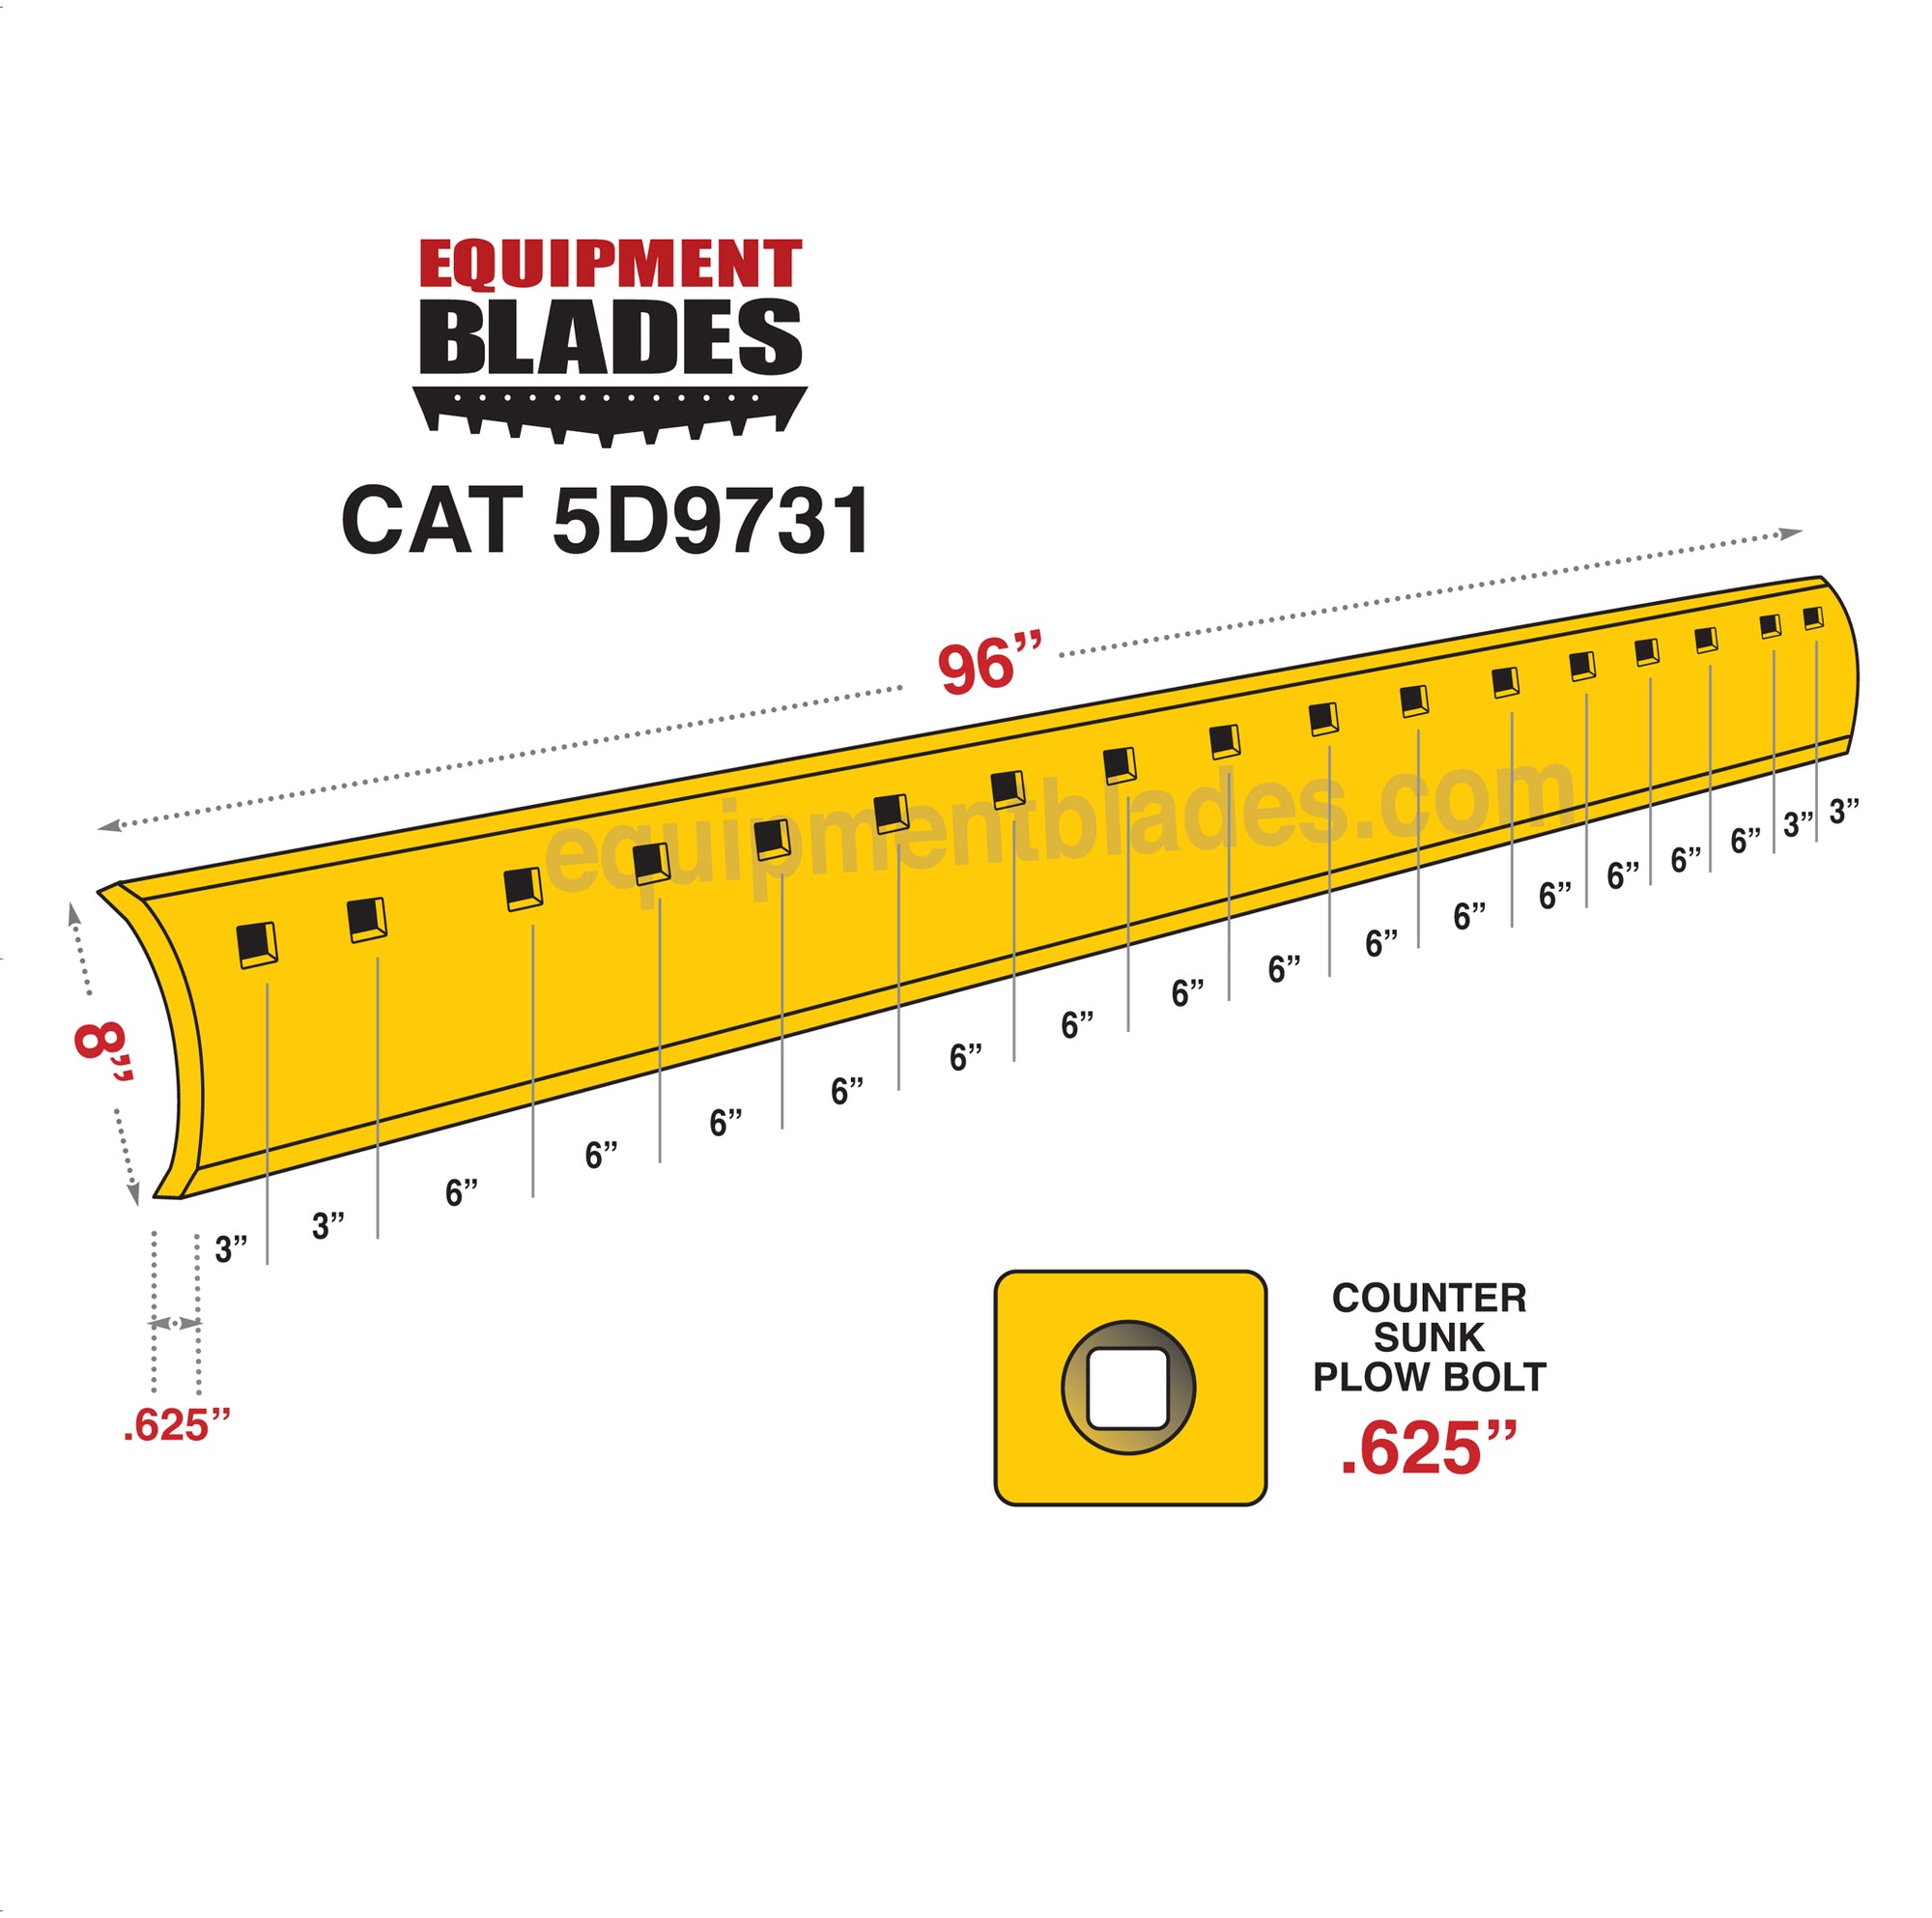 Cat 5d9731 Equipment Blades Inc